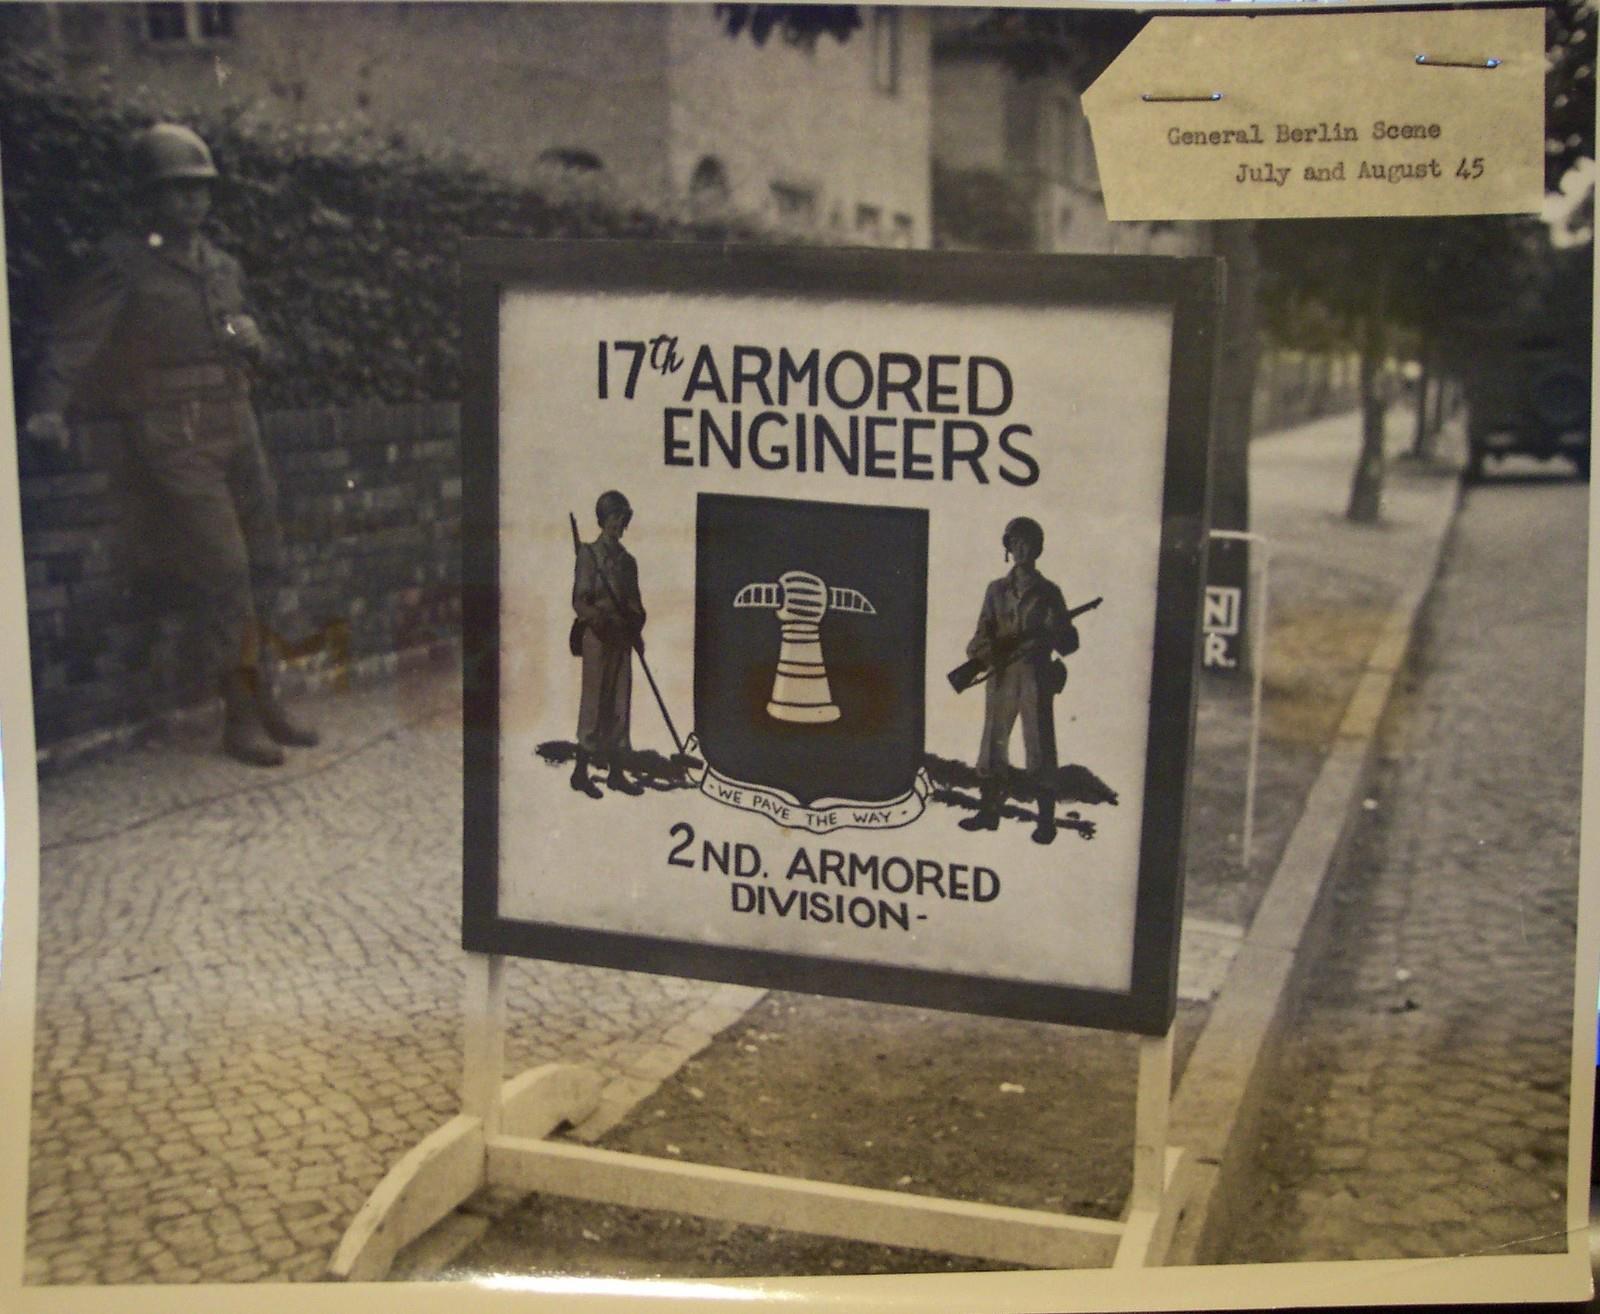 Bord17th Engineers, Berlijn, Duitsland juli en augustus 1945(3)